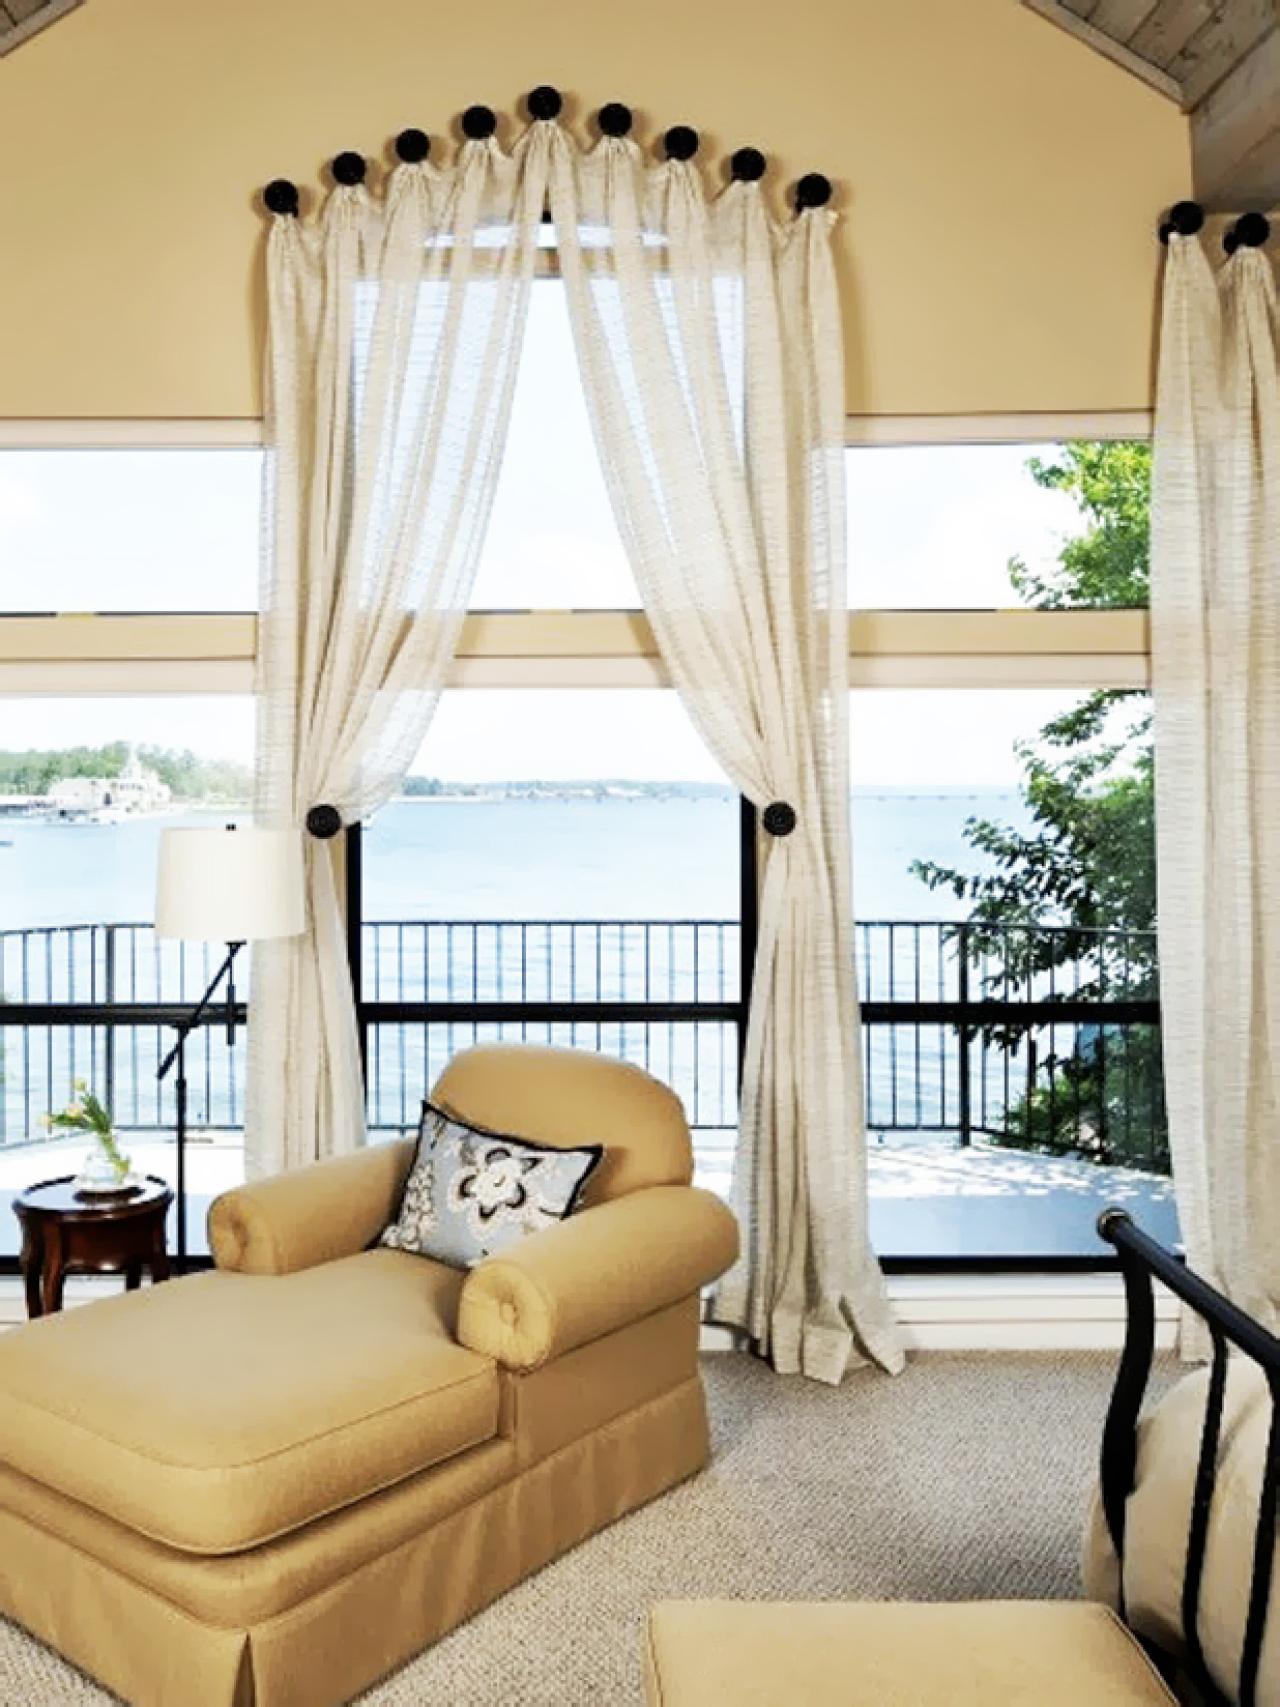 Dreamy Bedroom Window Treatment Ideas | Bedrooms & Bedroom ...